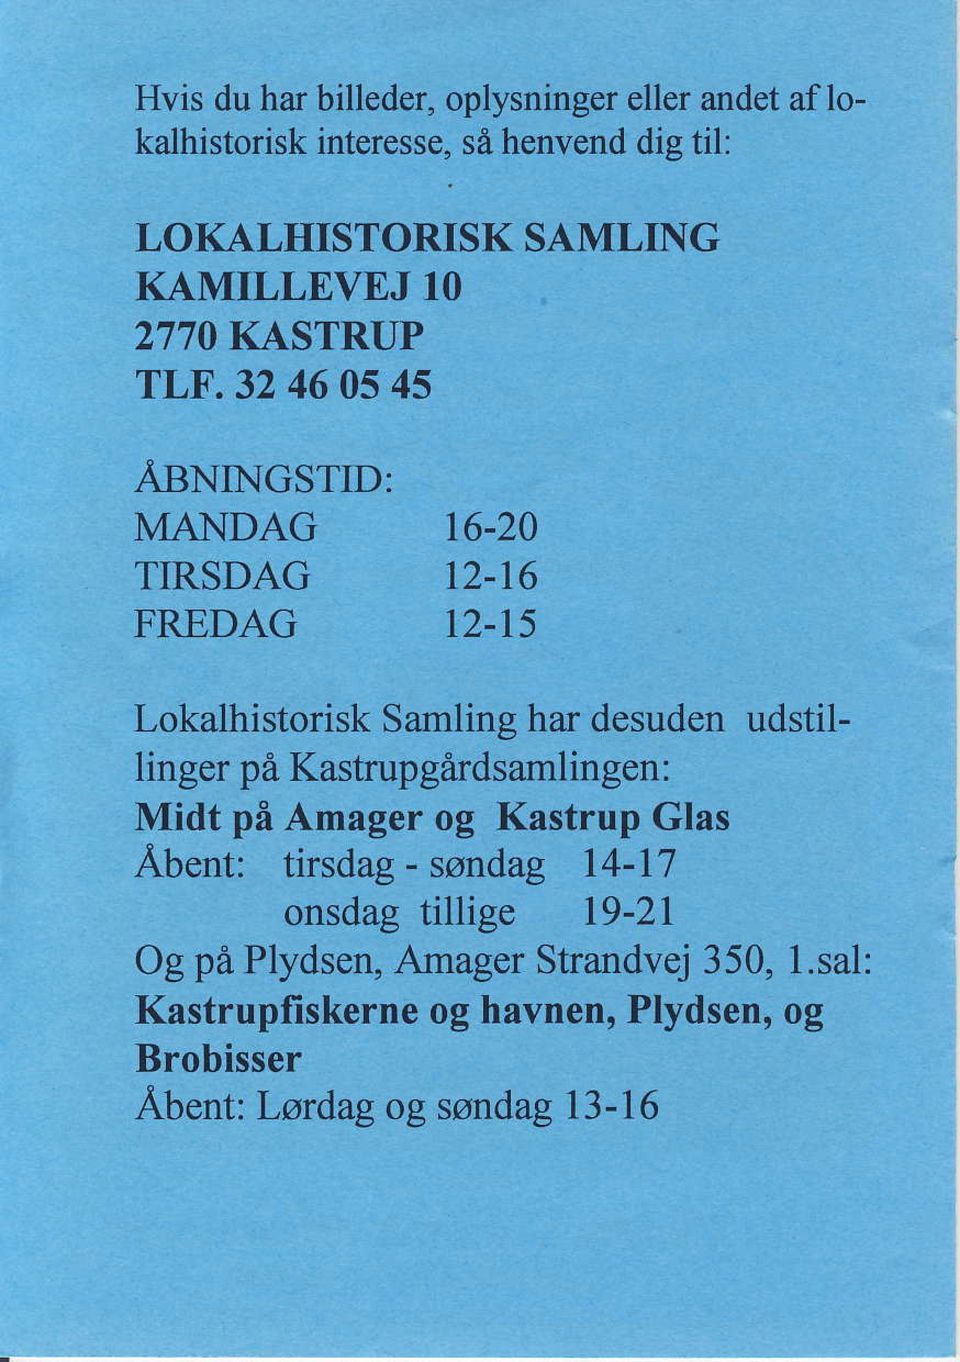 16 FREDAG 12-15 Lokalhistorisk Samling har desuden udstillinger pi Kastrupgdrdsamlingen: Midt pi Amager og Kastrup Glas